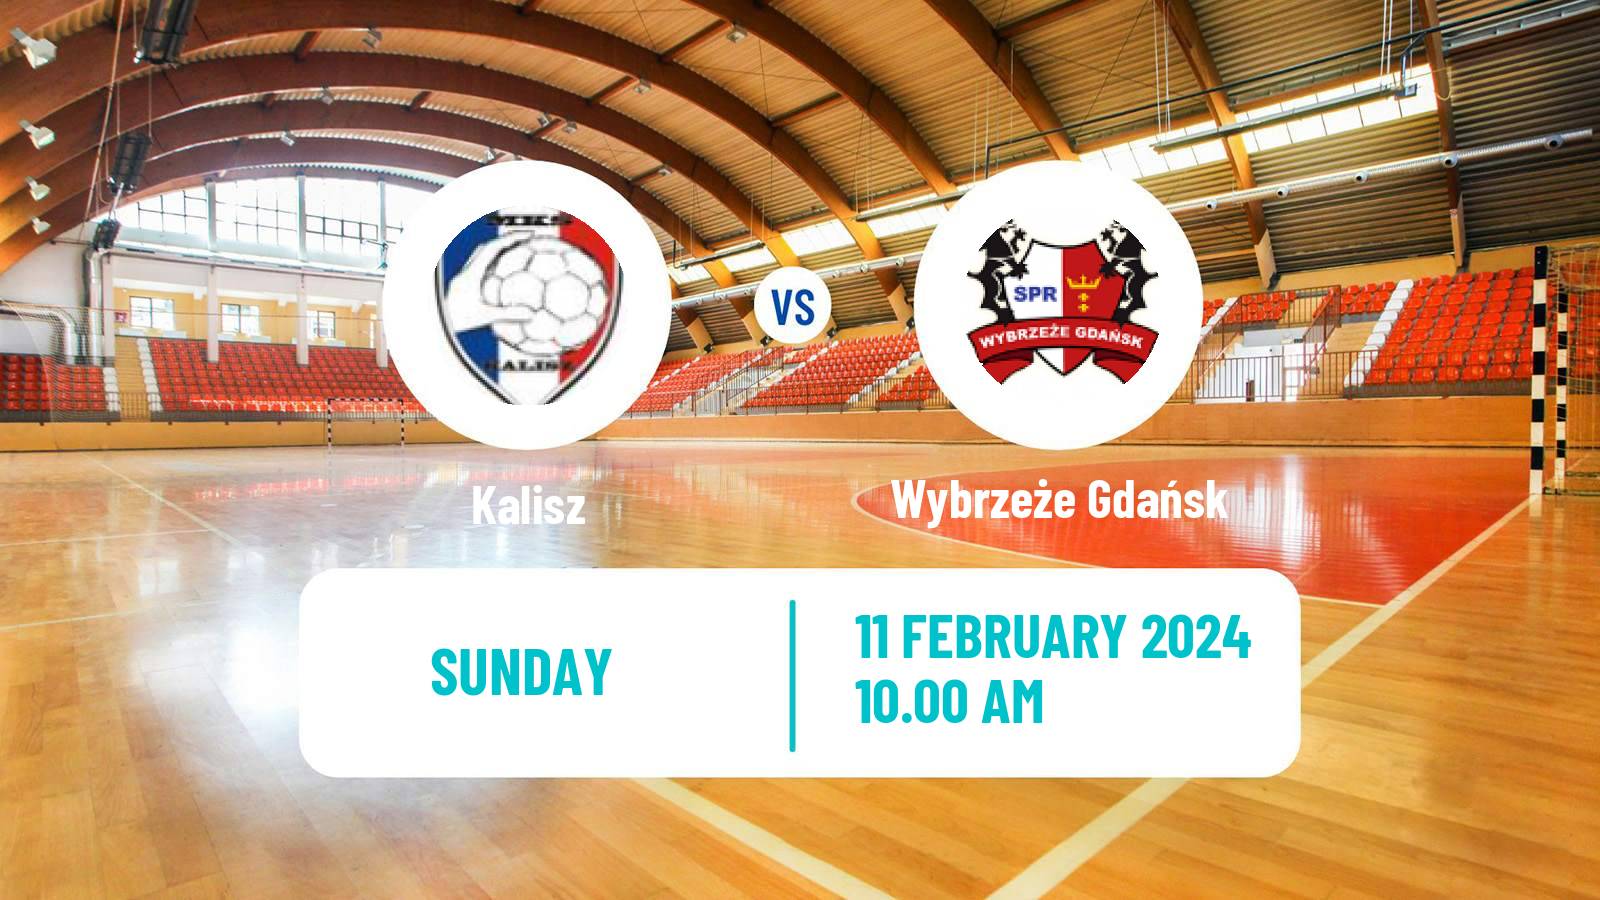 Handball Polish Superliga Handball Kalisz - Wybrzeże Gdańsk